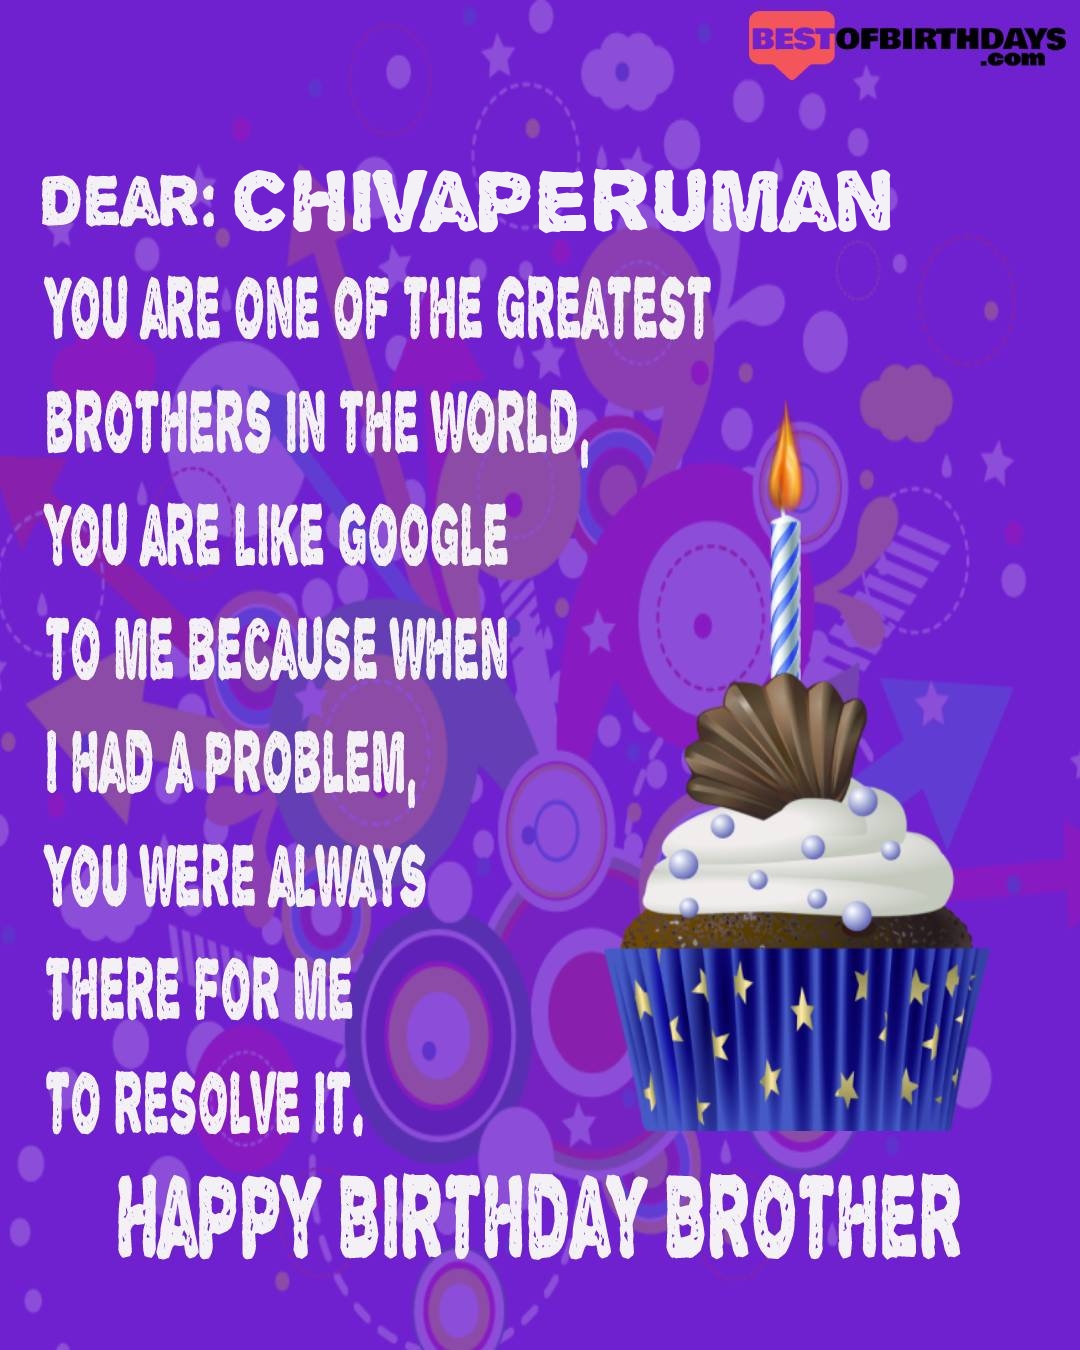 Happy birthday chivaperuman bhai brother bro